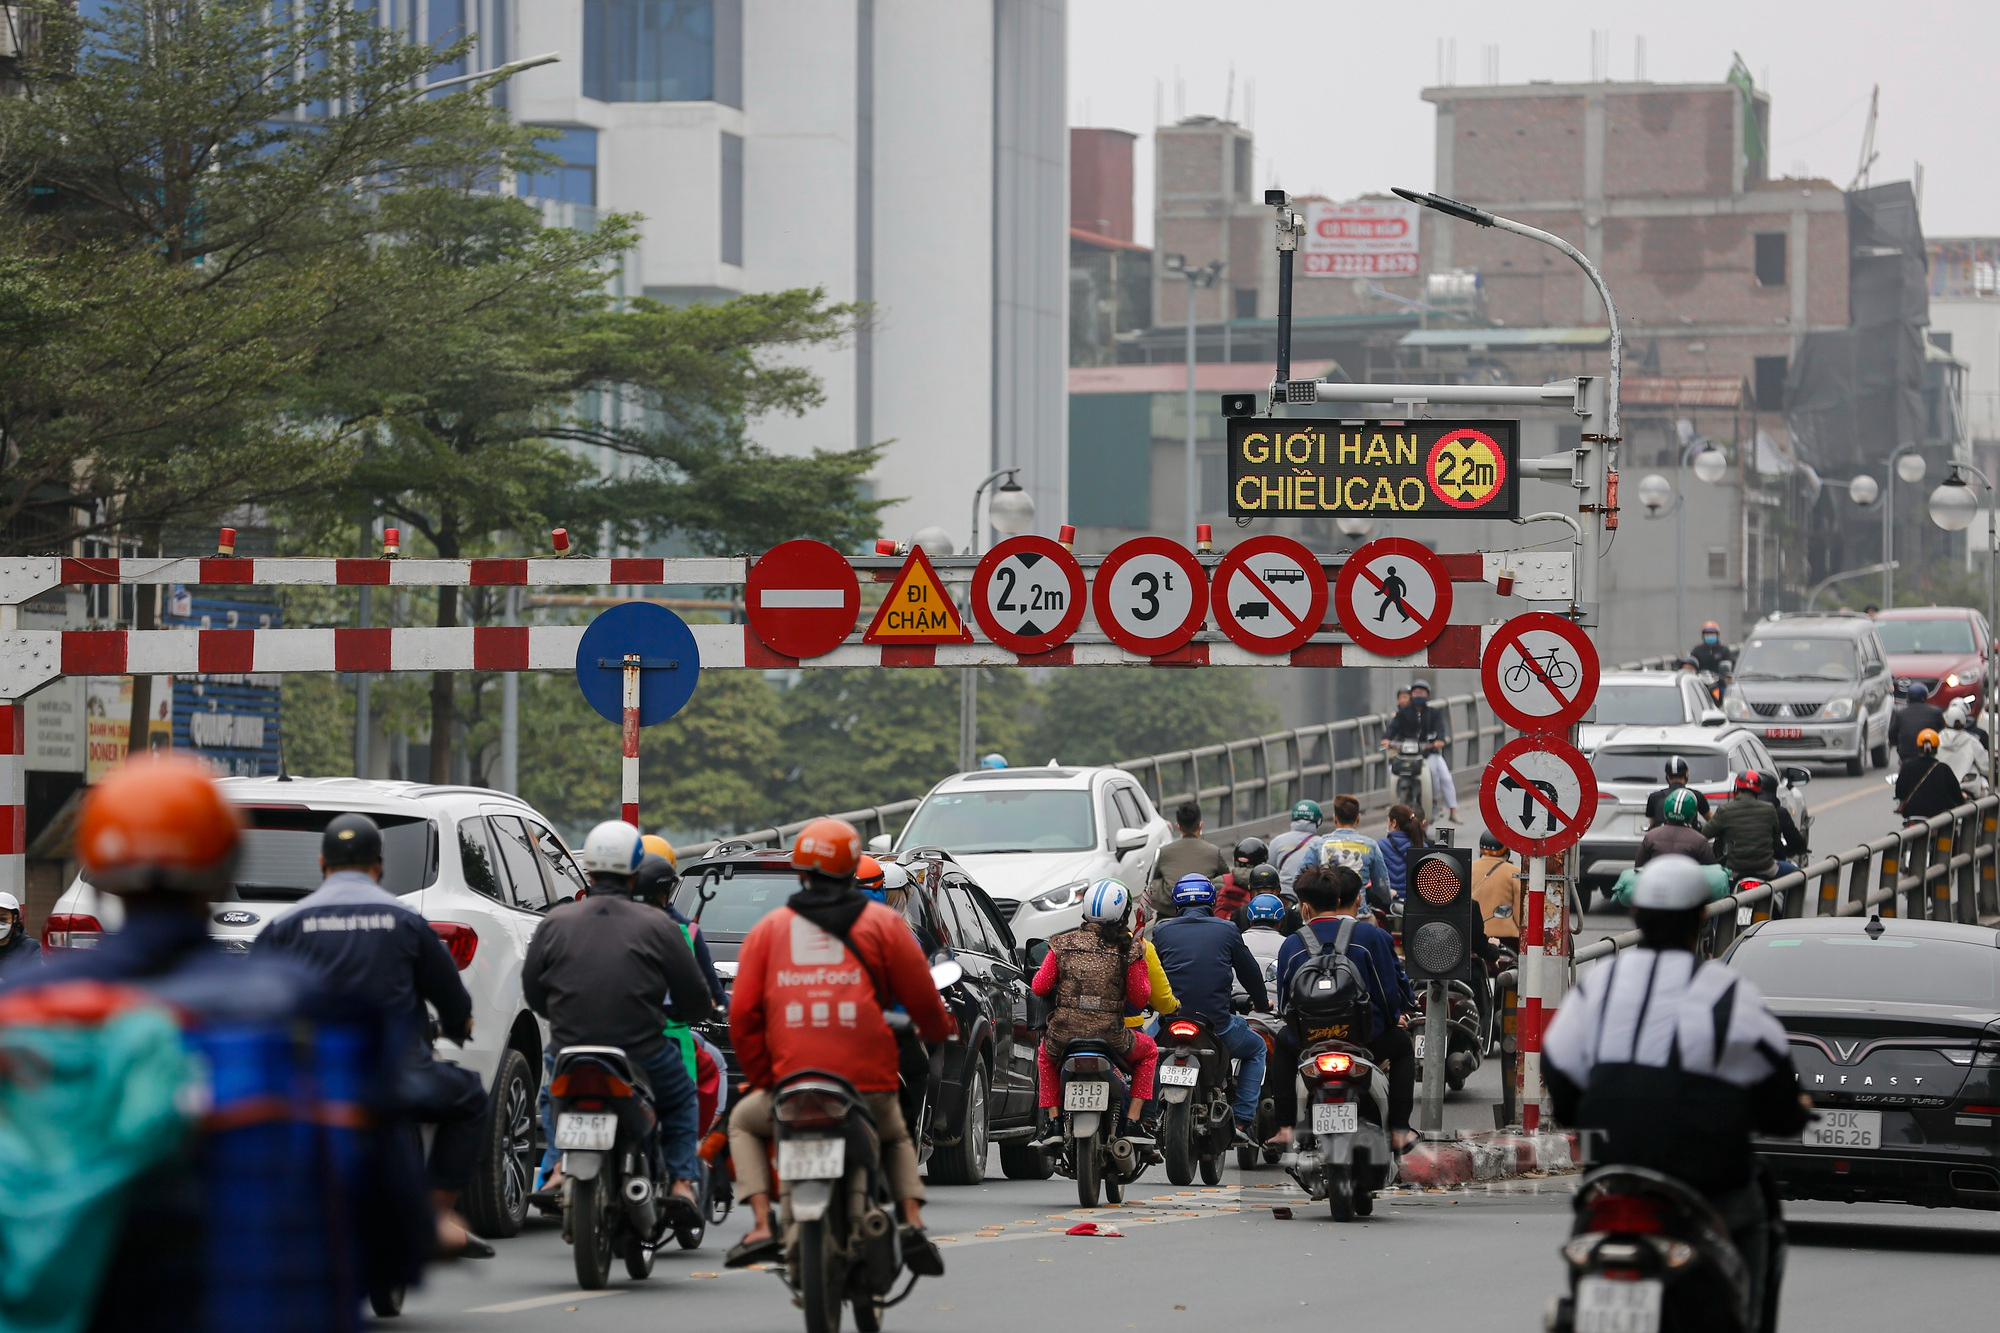 Mục sở thị biển báo giao thông điện tử Hà Nội đang thí điểm nhằm giảm ùn tắc - Ảnh 2.